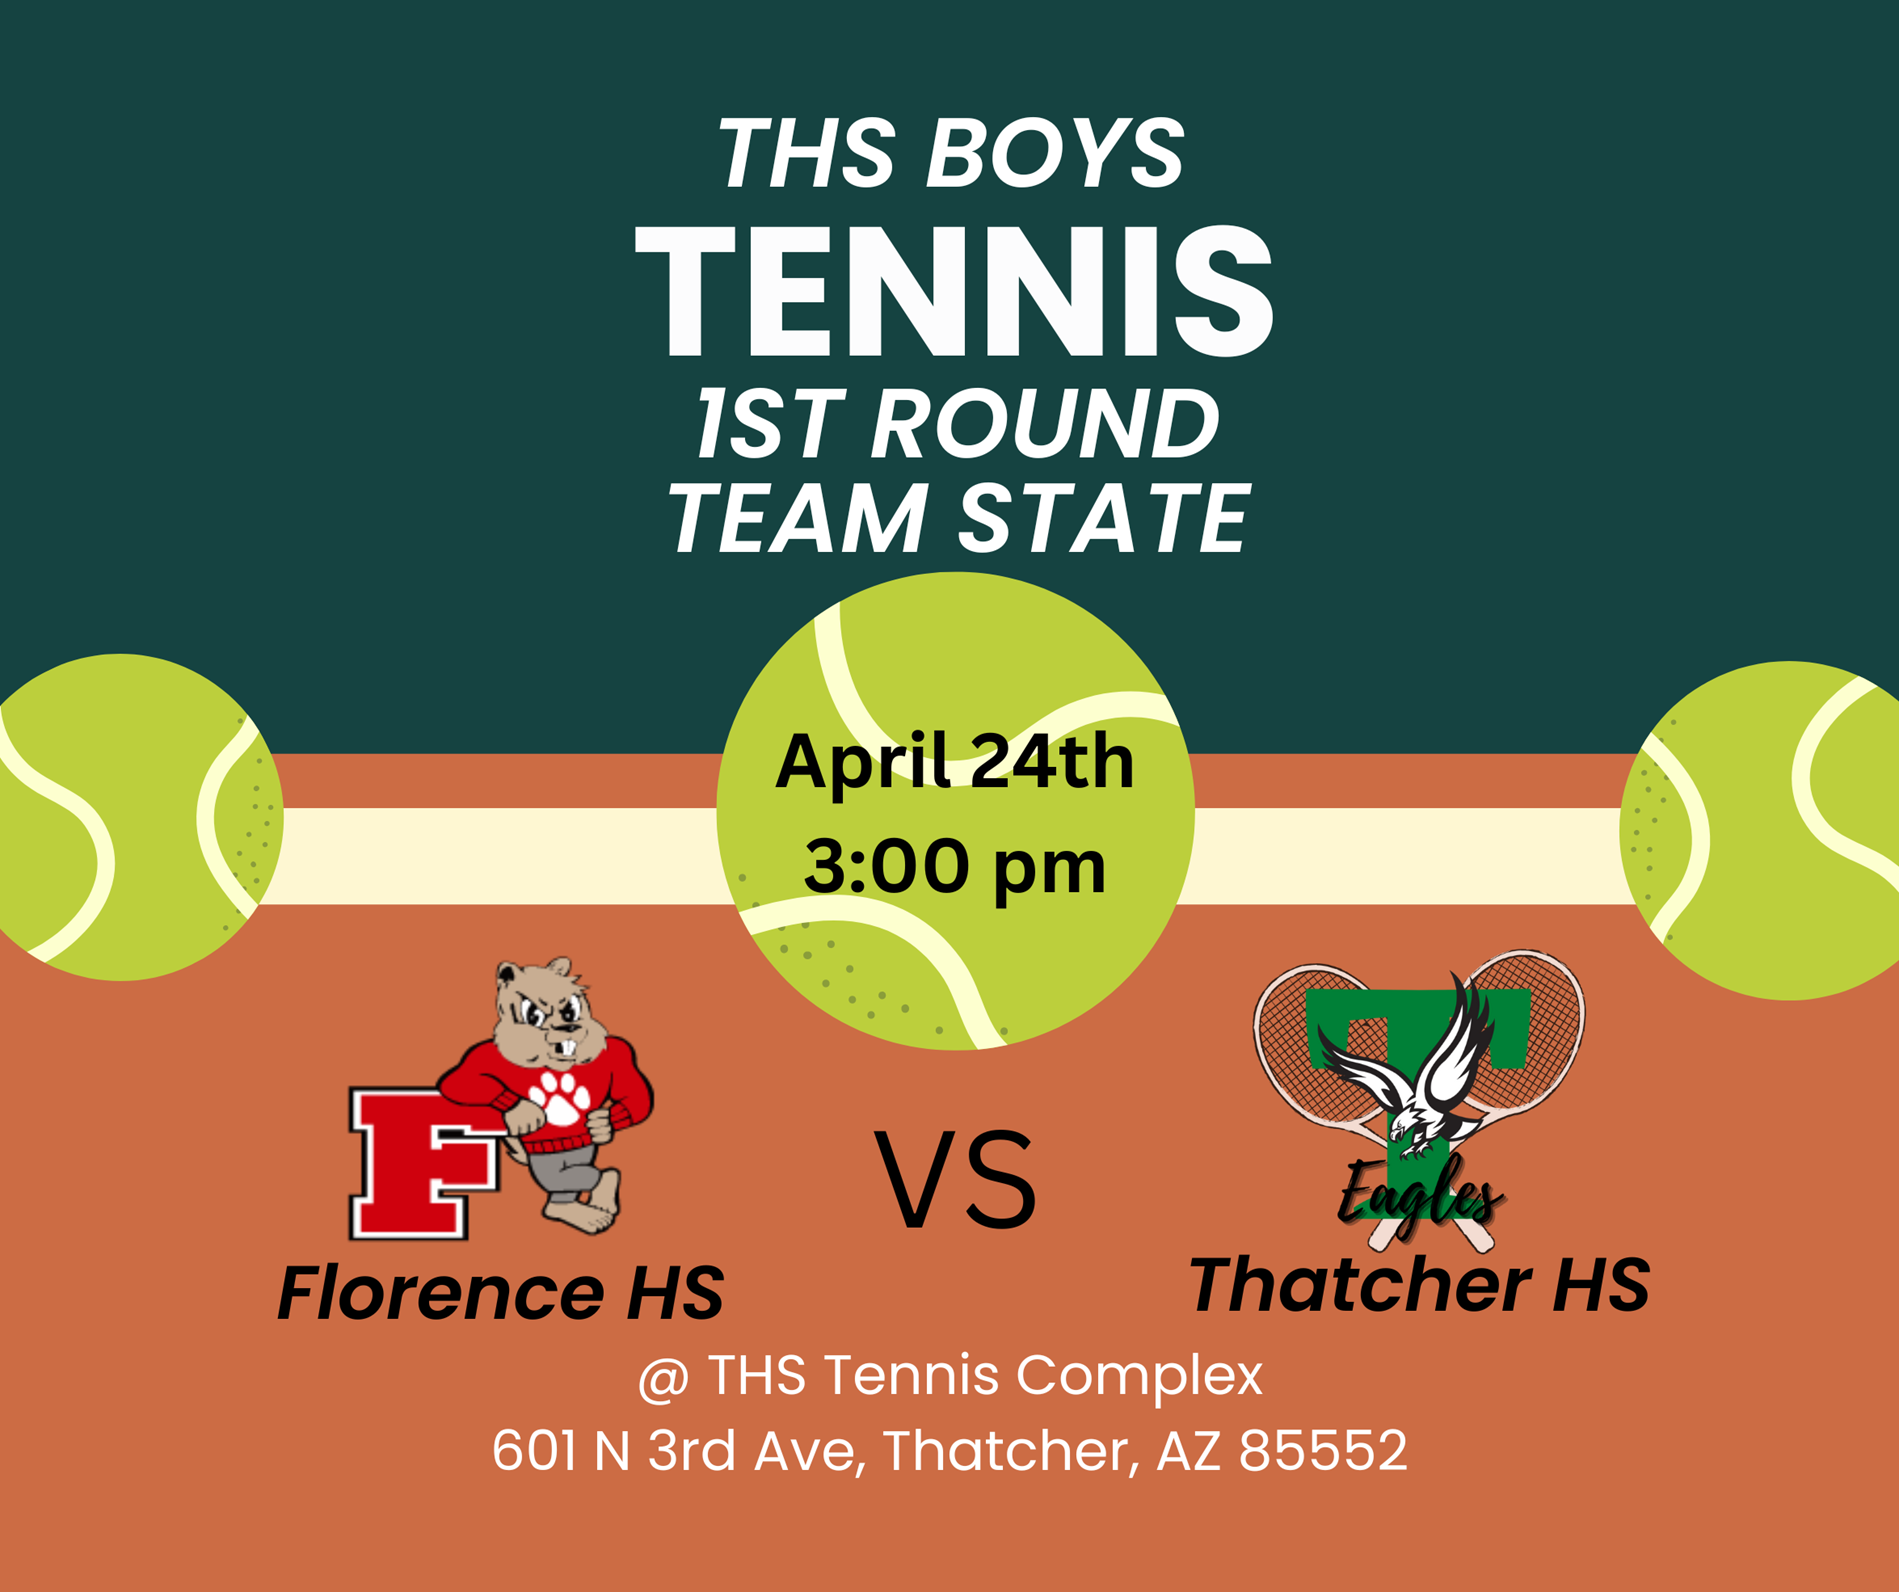 THS Boys Tennis Team 1st Round